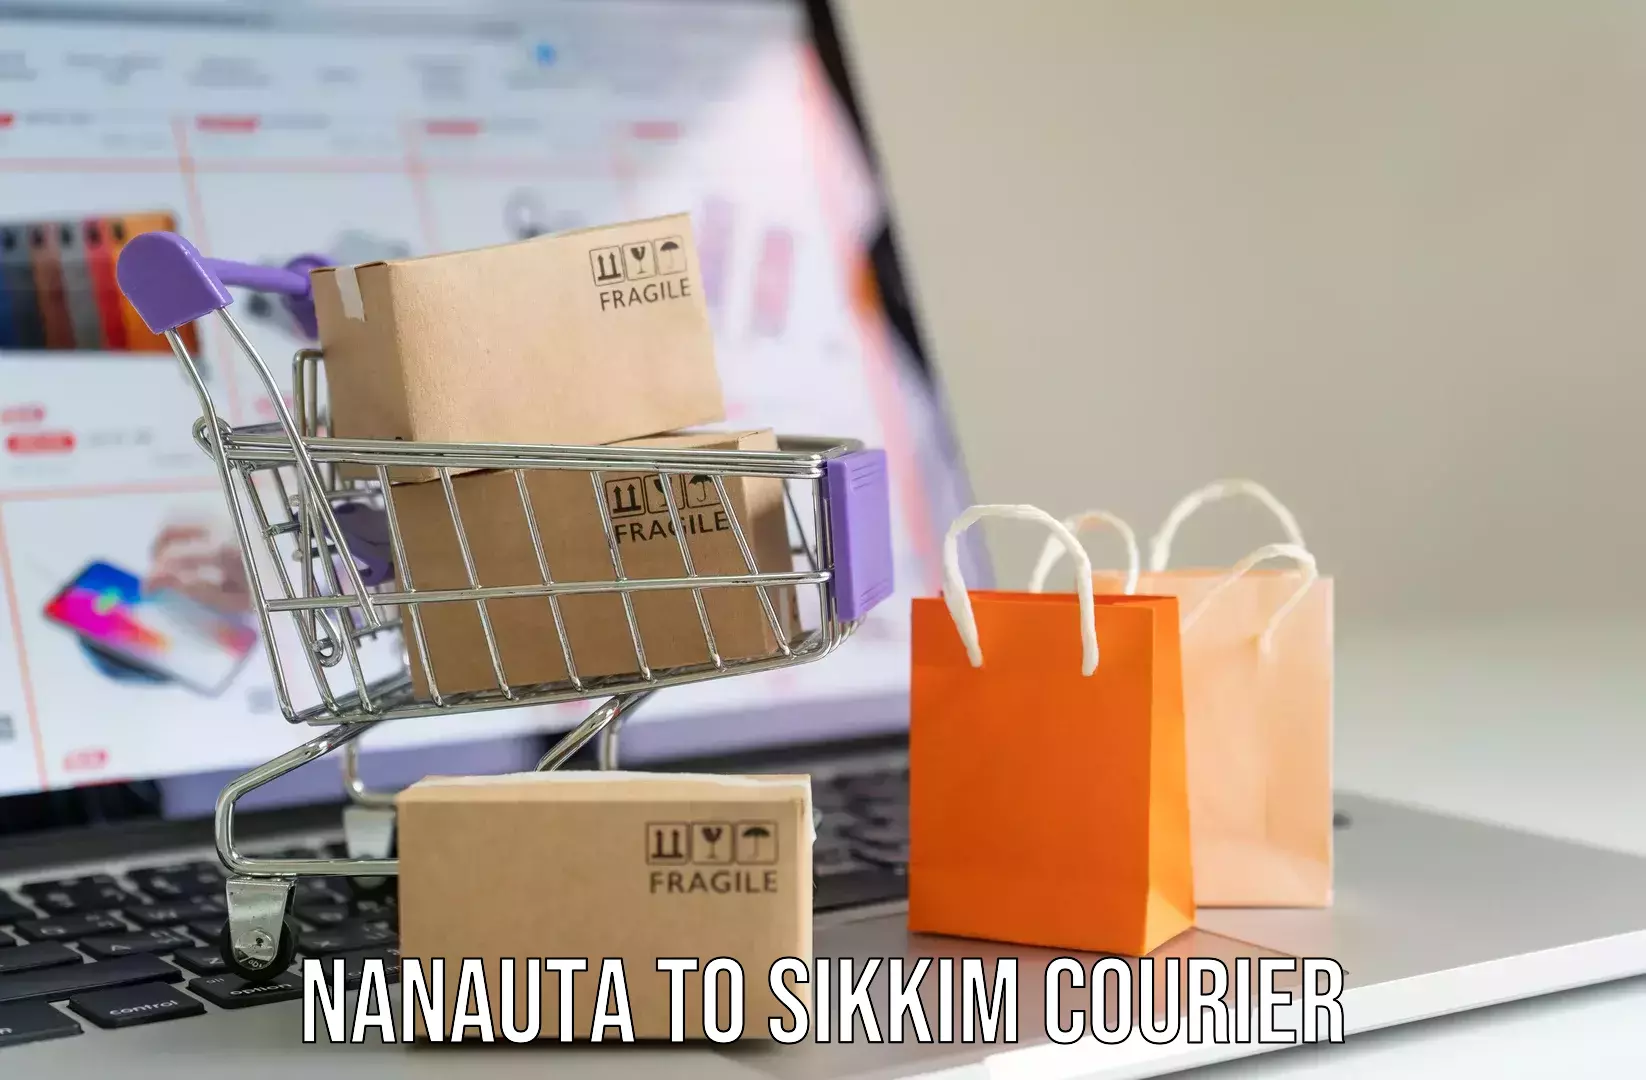 Customized luggage delivery Nanauta to Namchi